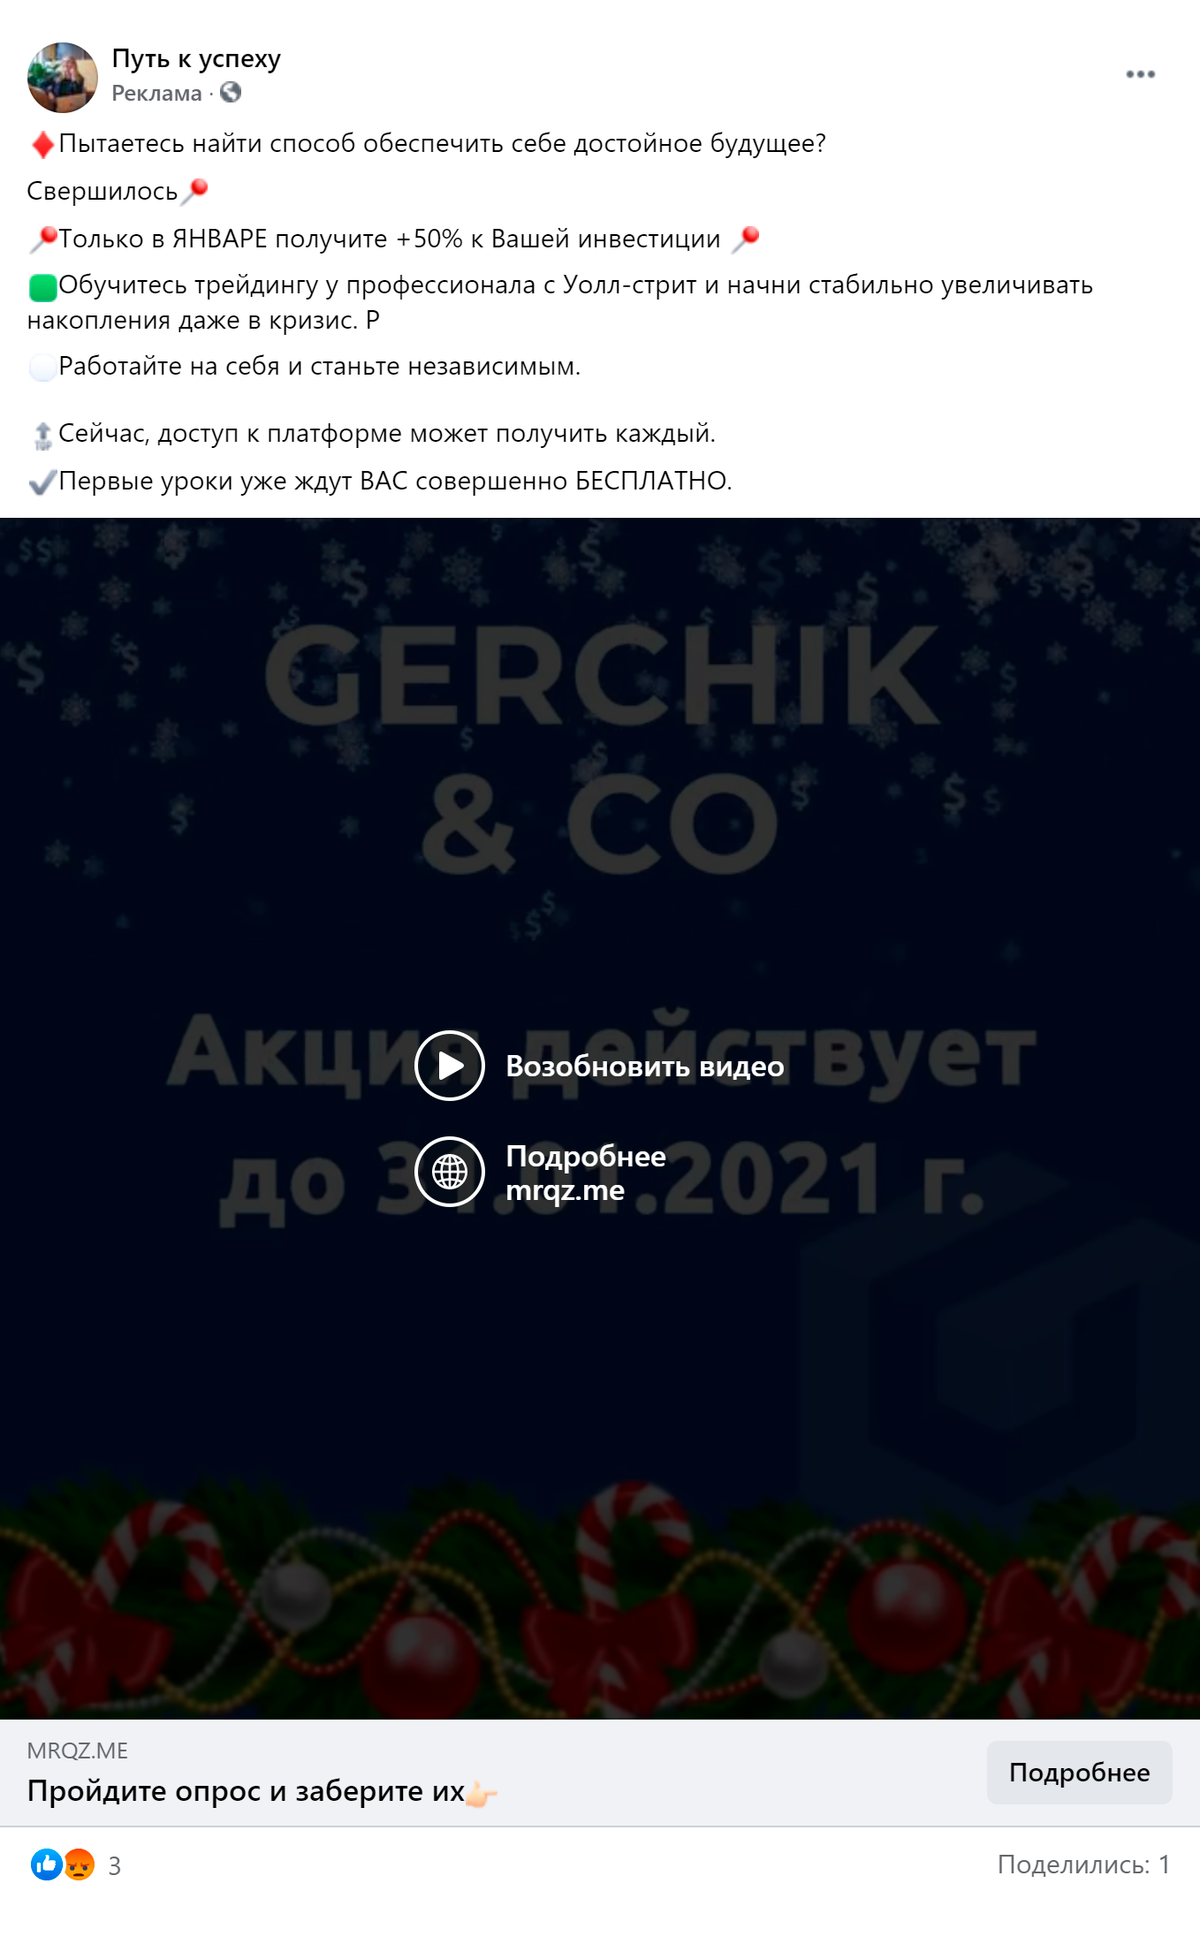 В рекламе от имени Gerchik & Co все те&nbsp;же 50% к депозиту, сказочные обещания и срок действия акции только до конца января